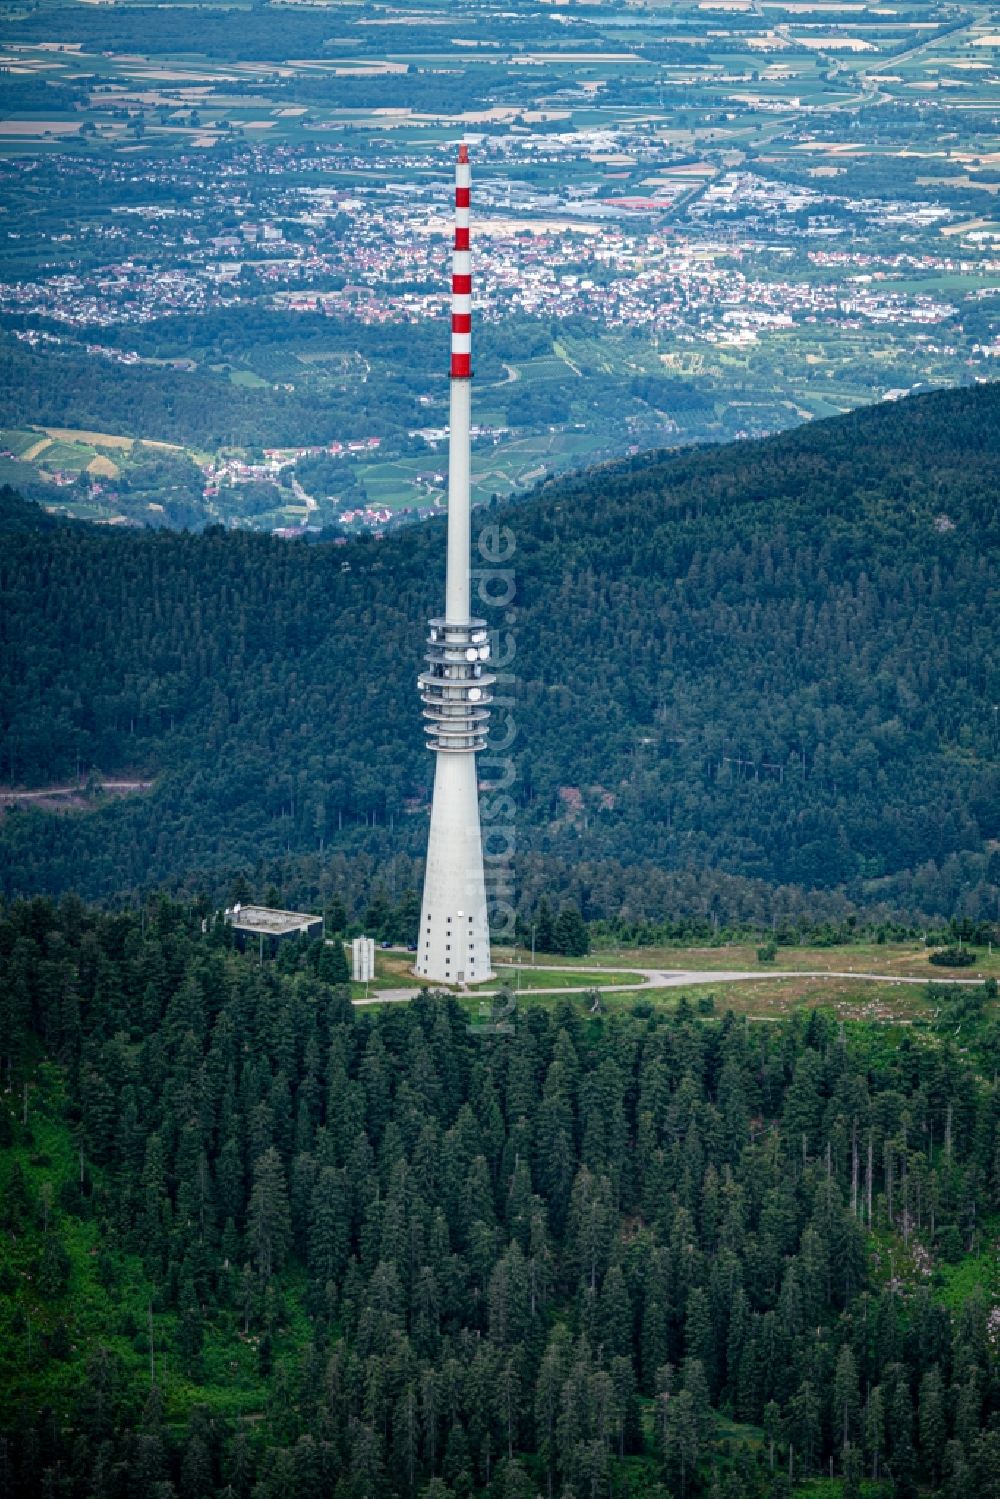 Sasbachwalden aus der Vogelperspektive: Fernmeldeturm und Fernsehturm in Sasbachwalden Hornisgrunde, im Bundesland Baden-Württemberg, Deutschland